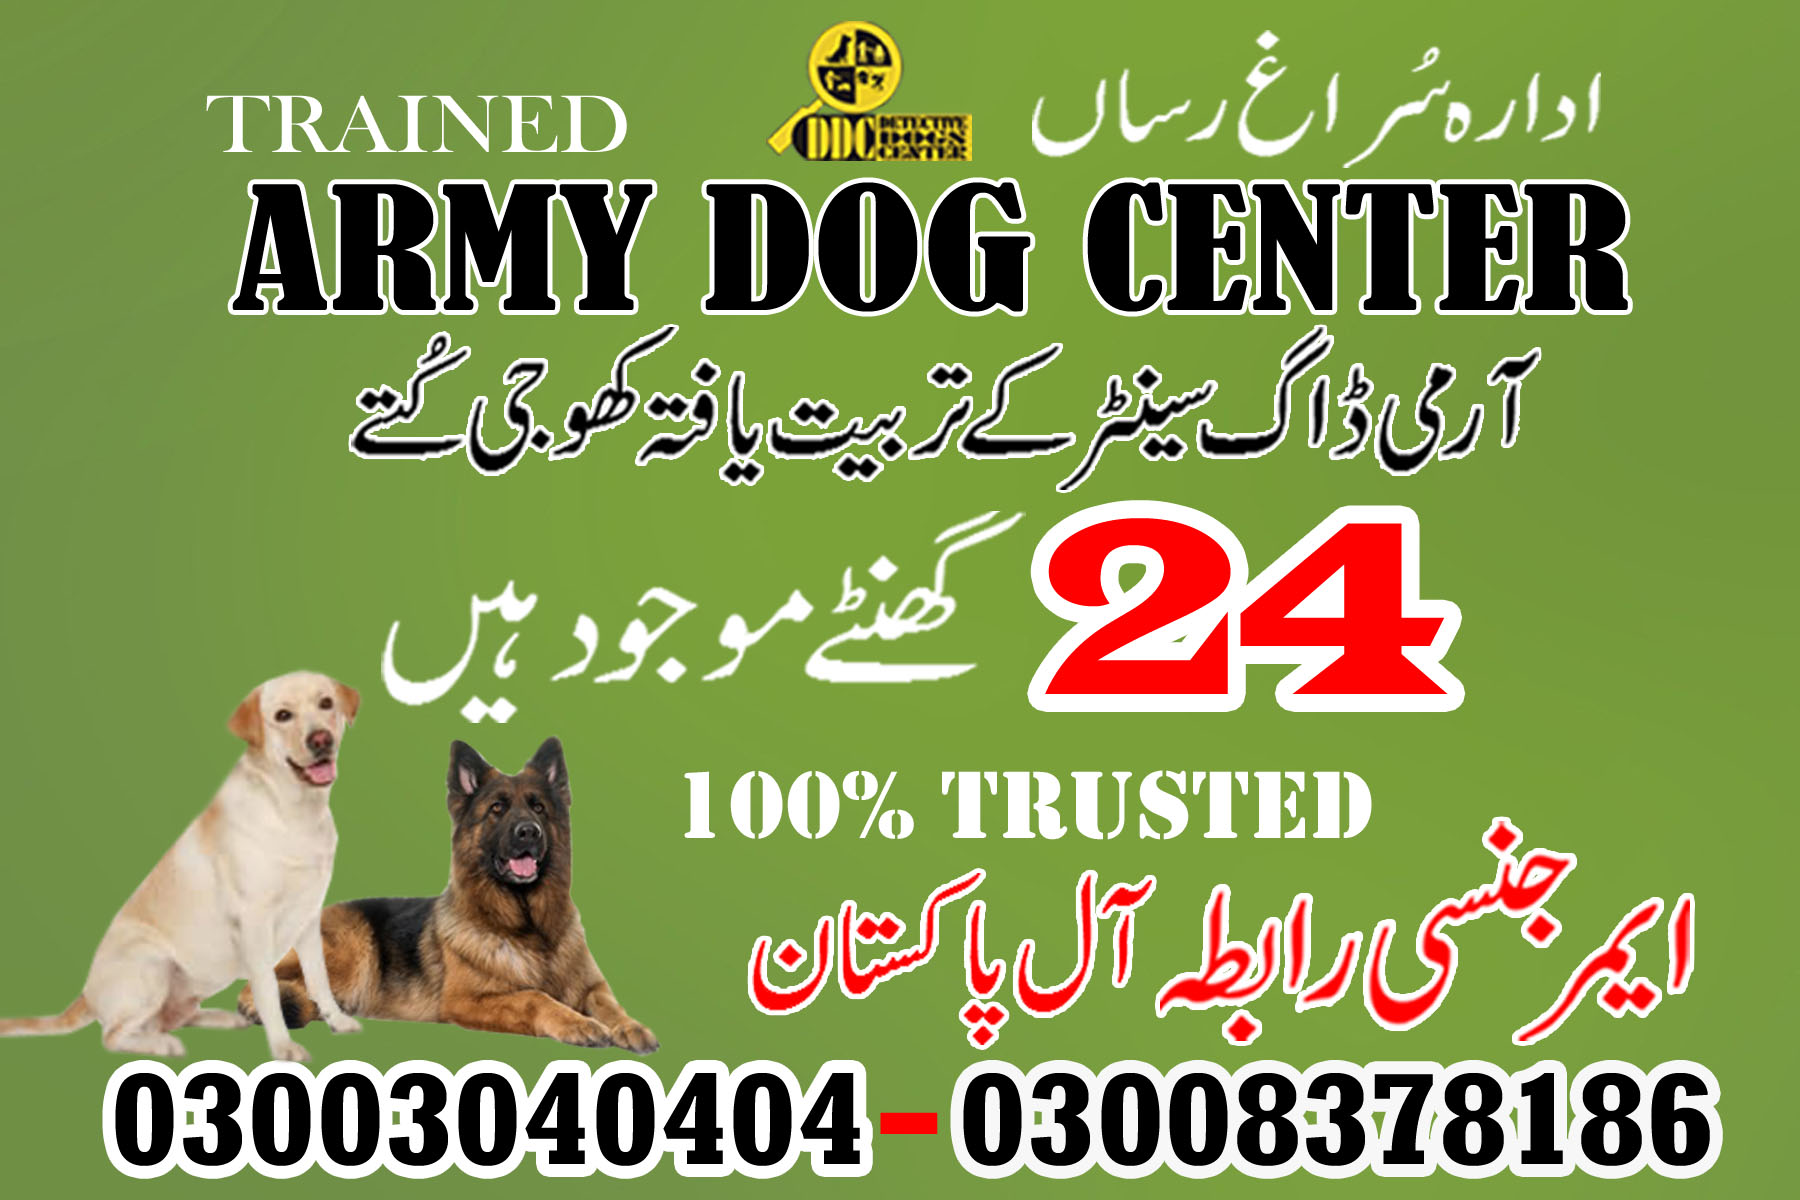 Army Dog Center Thatta Sindh Pakistan 03003040404